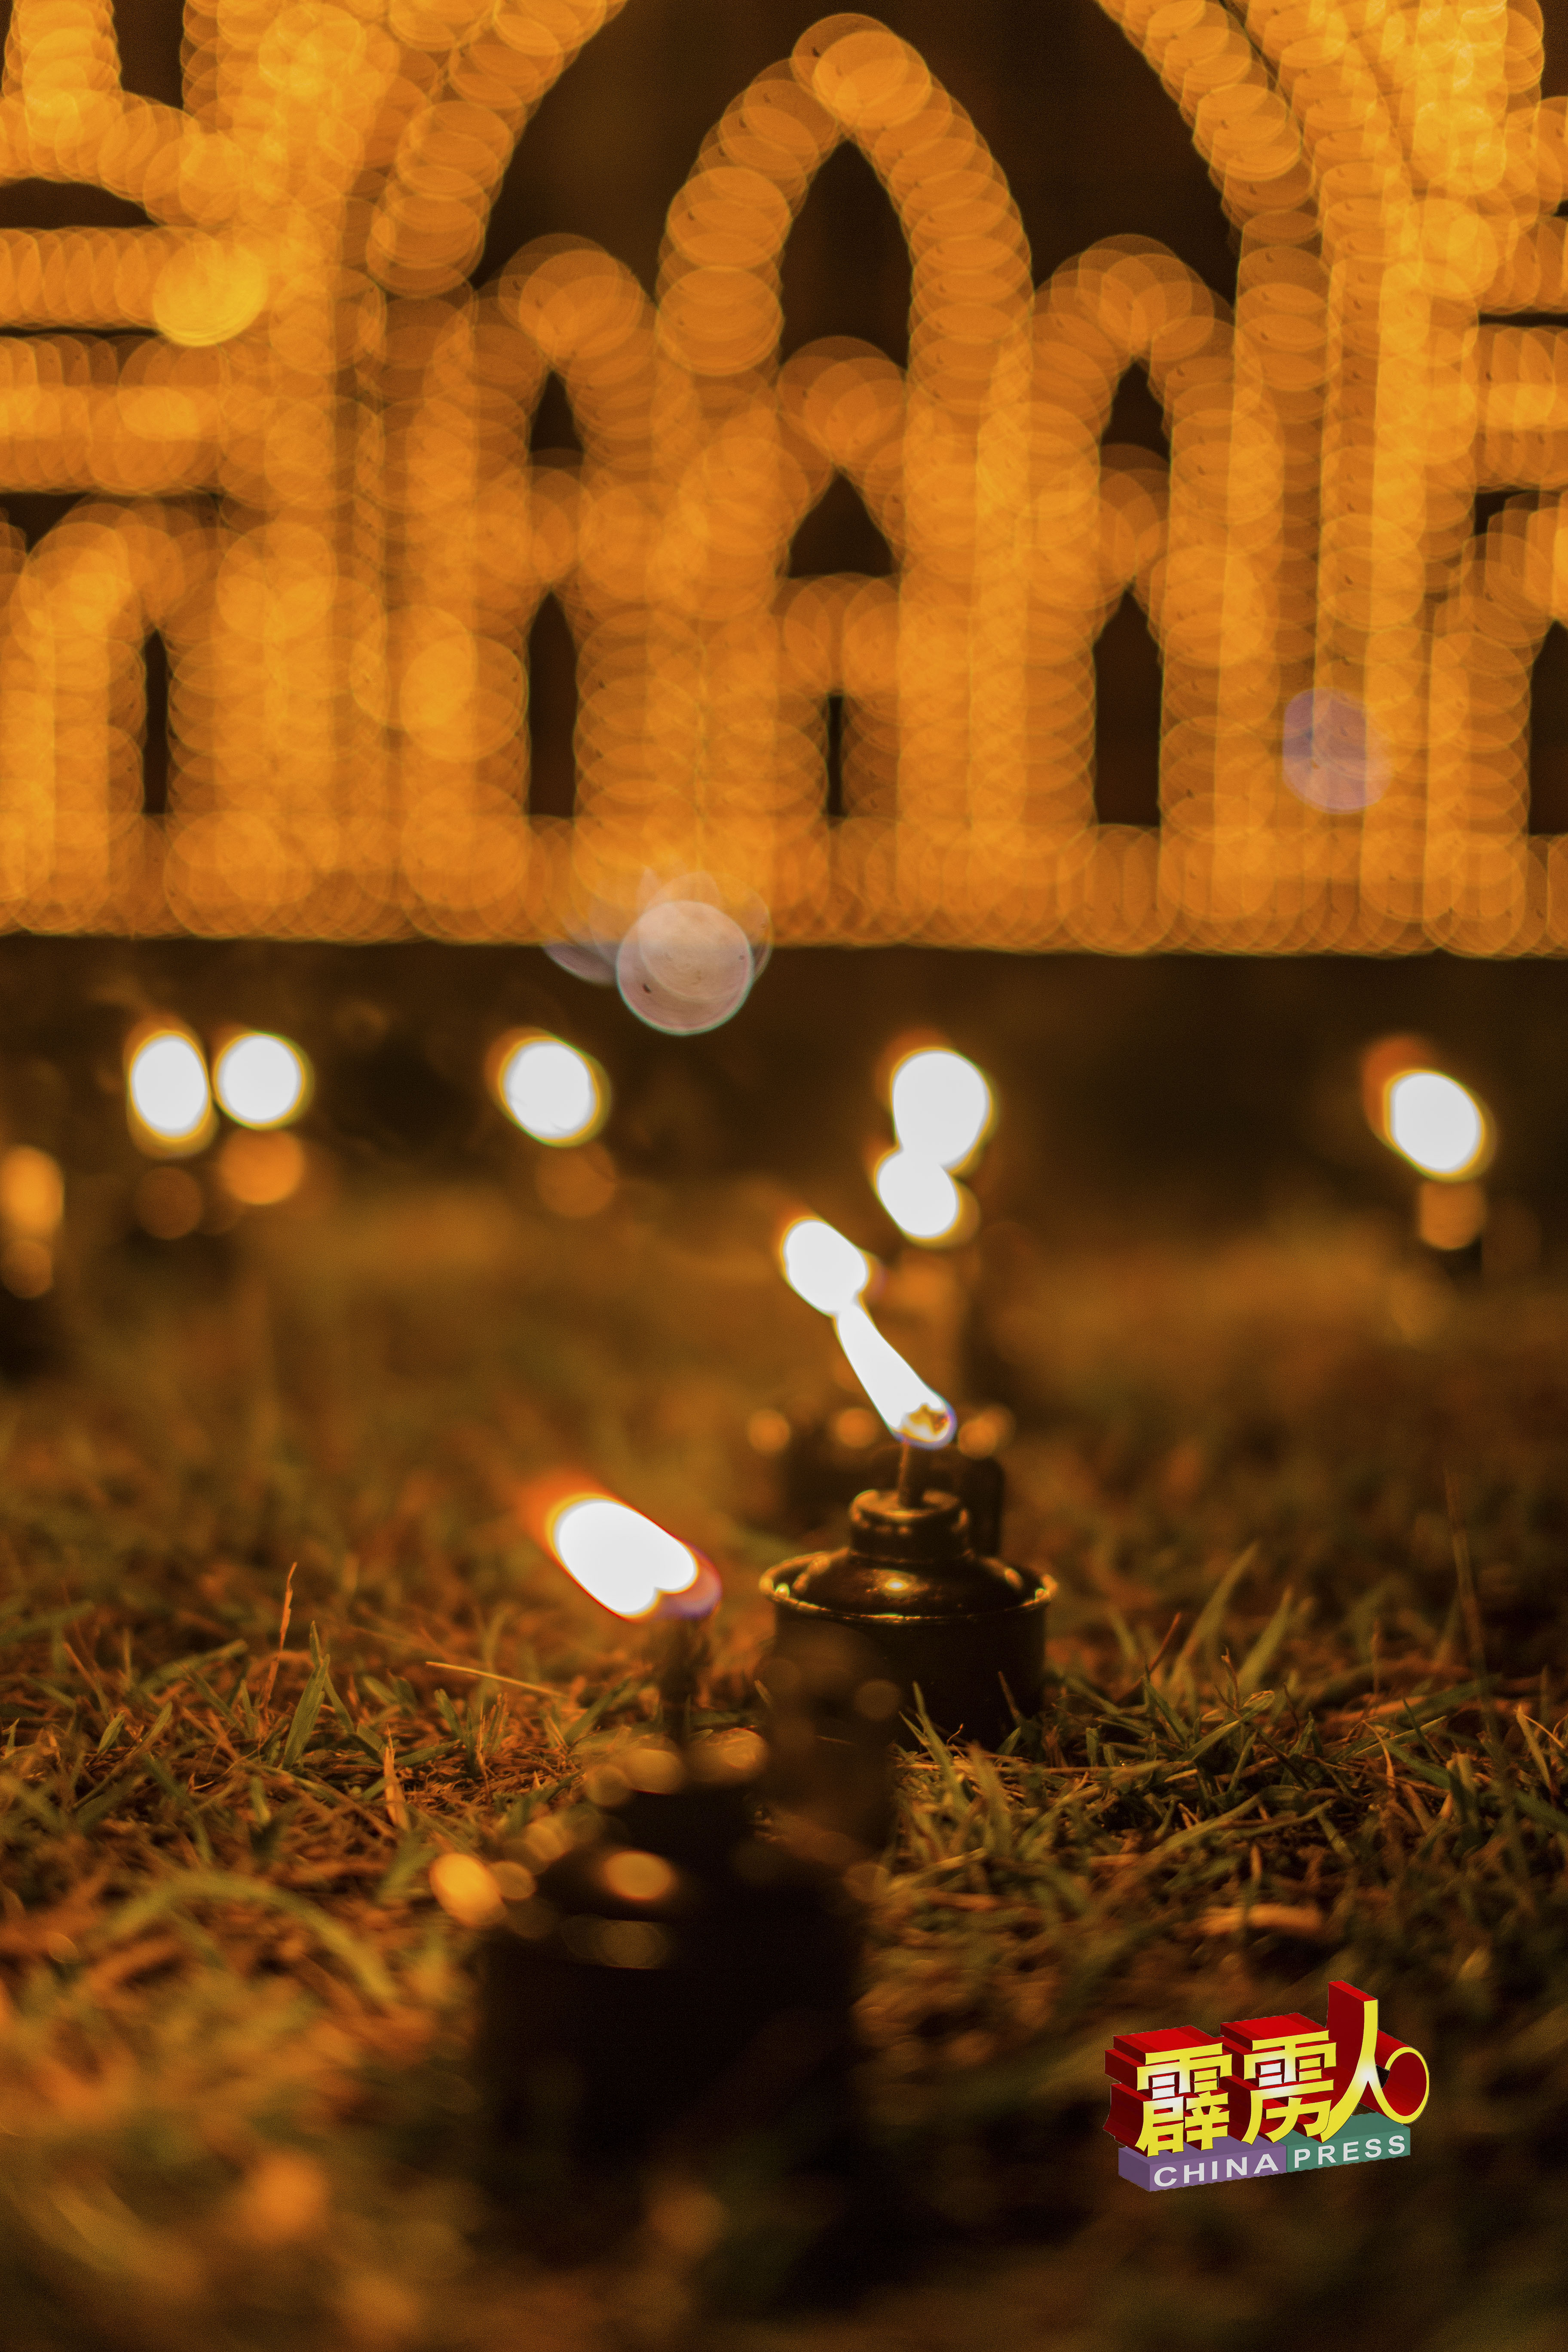 甘榜立布的点燃传统土油灯的日子，落在4月6日，大家不容错过。